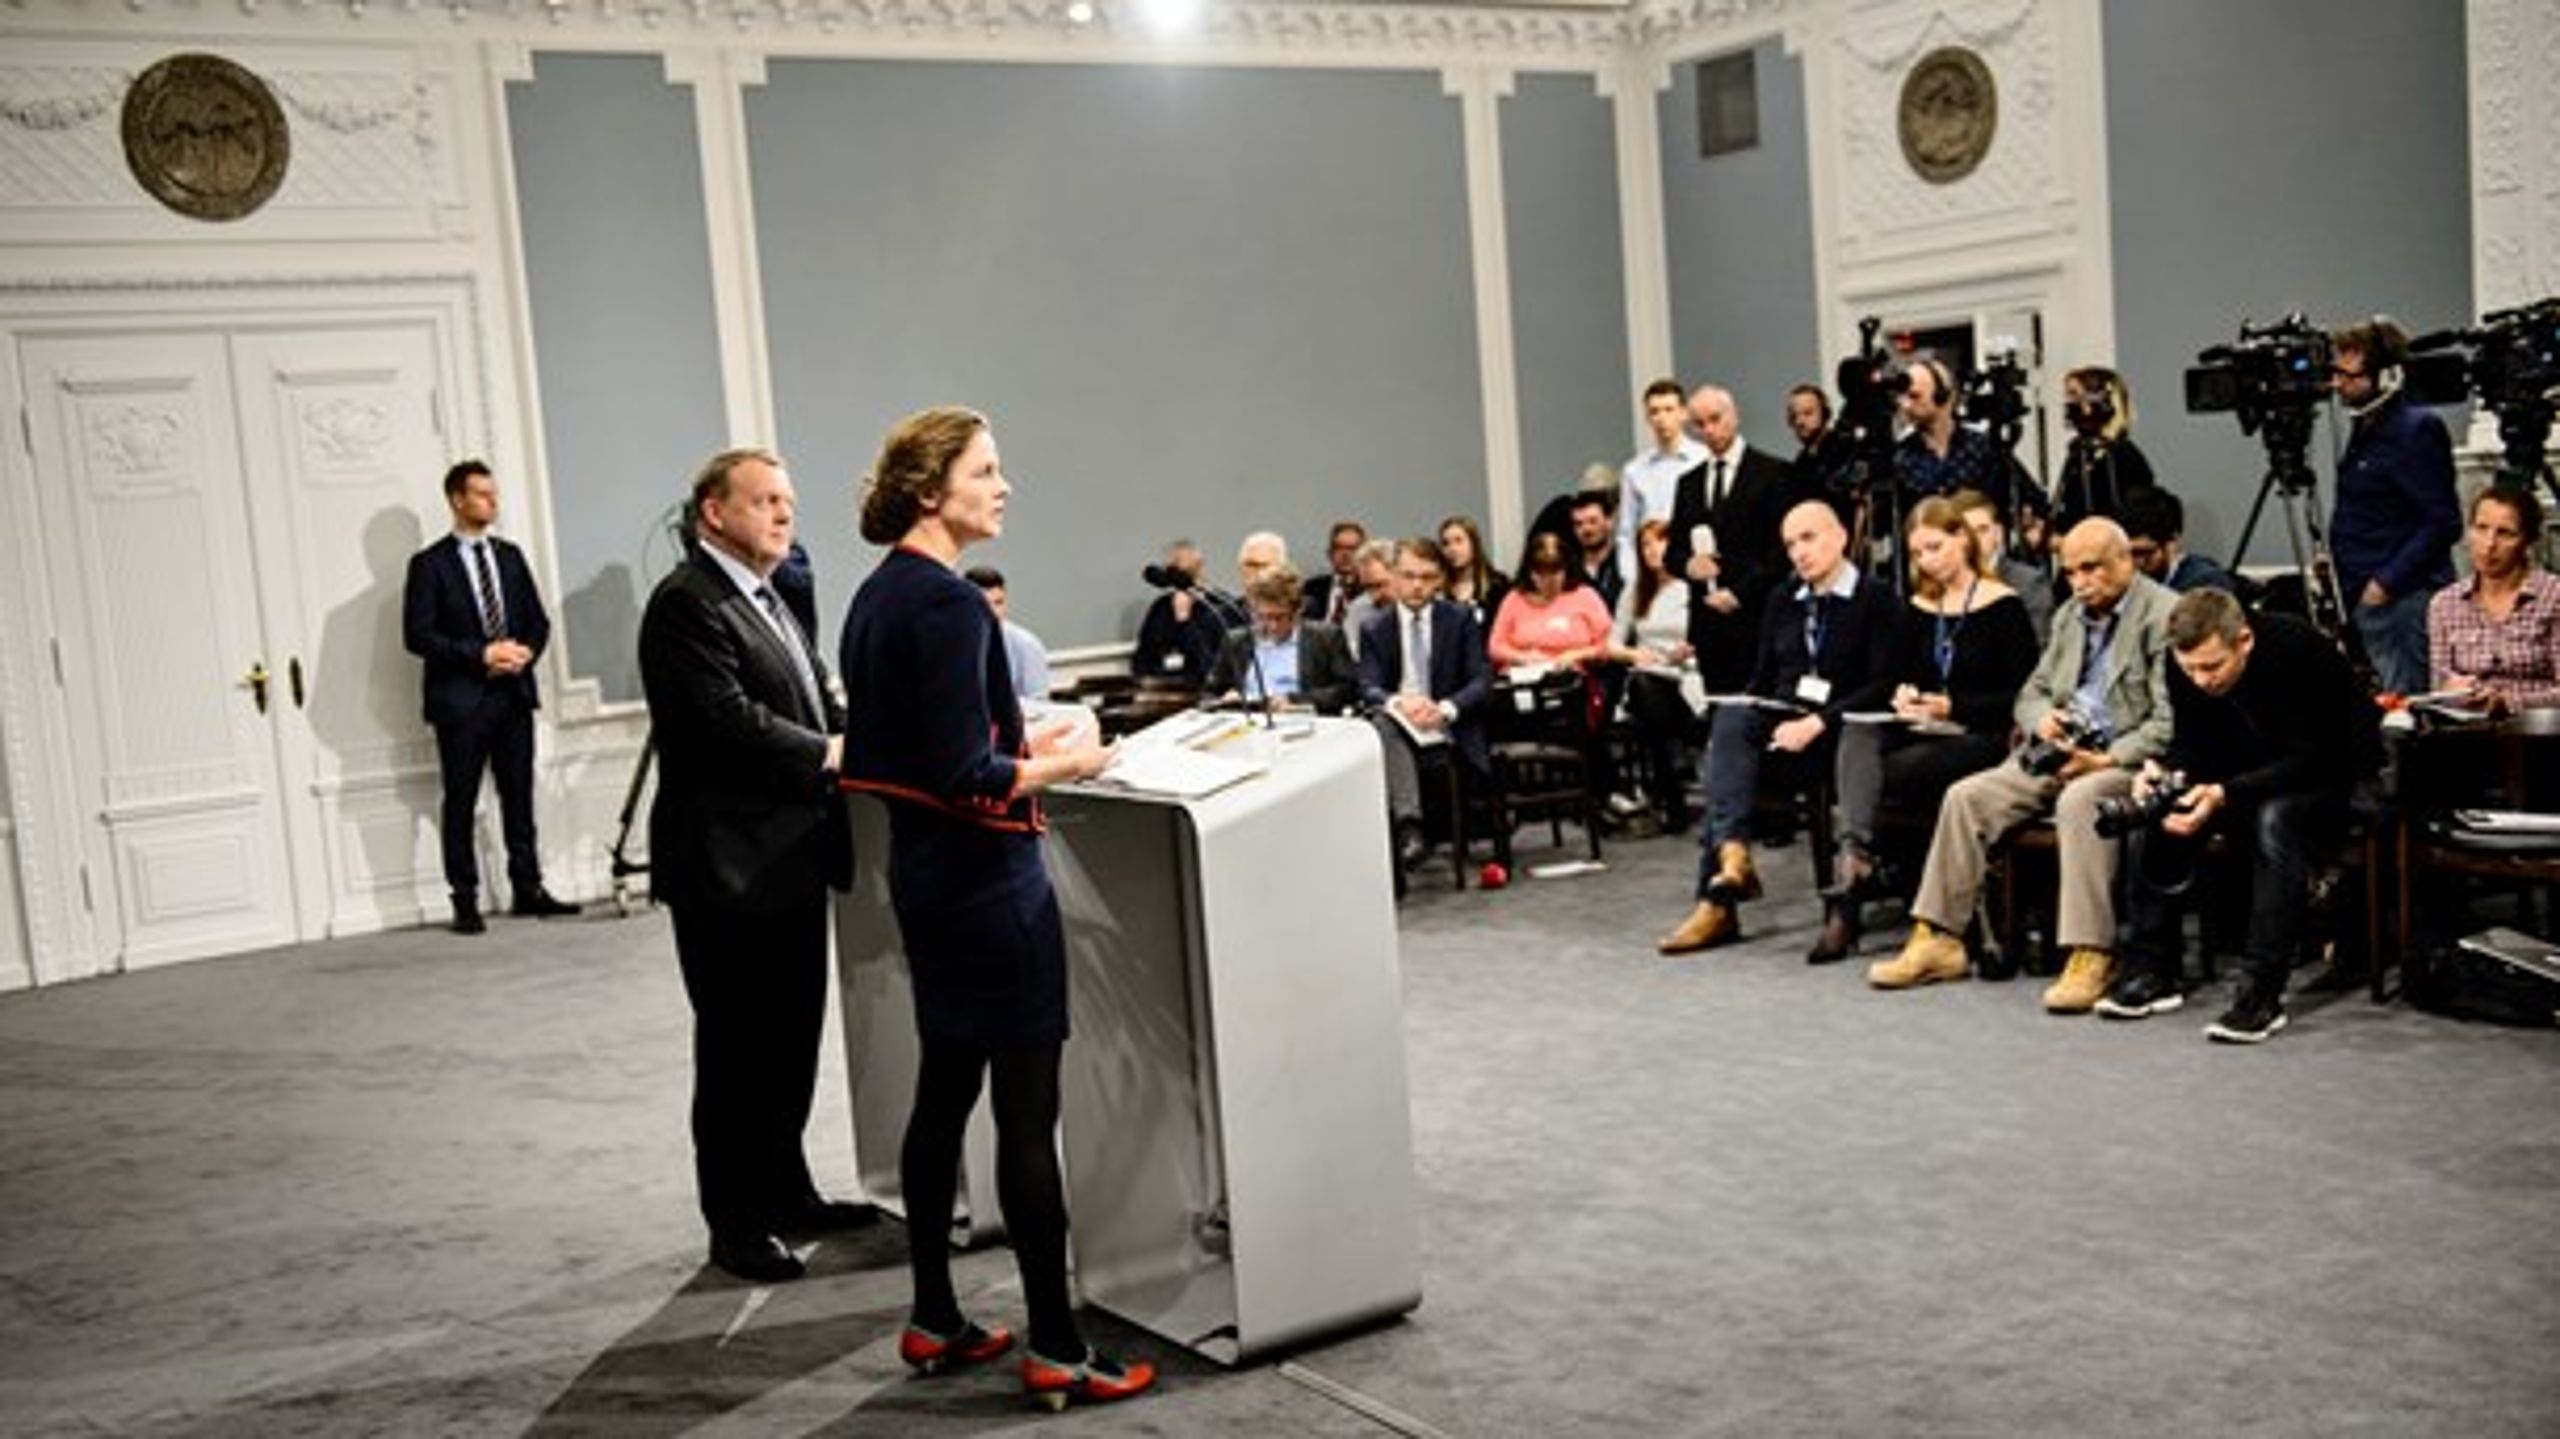 Sundhedsminister Ellen Trane Nørby og statsminister Lars Løkke Rasmussen ventes at præsentere sundhedsreformen meget snart. Arkivfoto